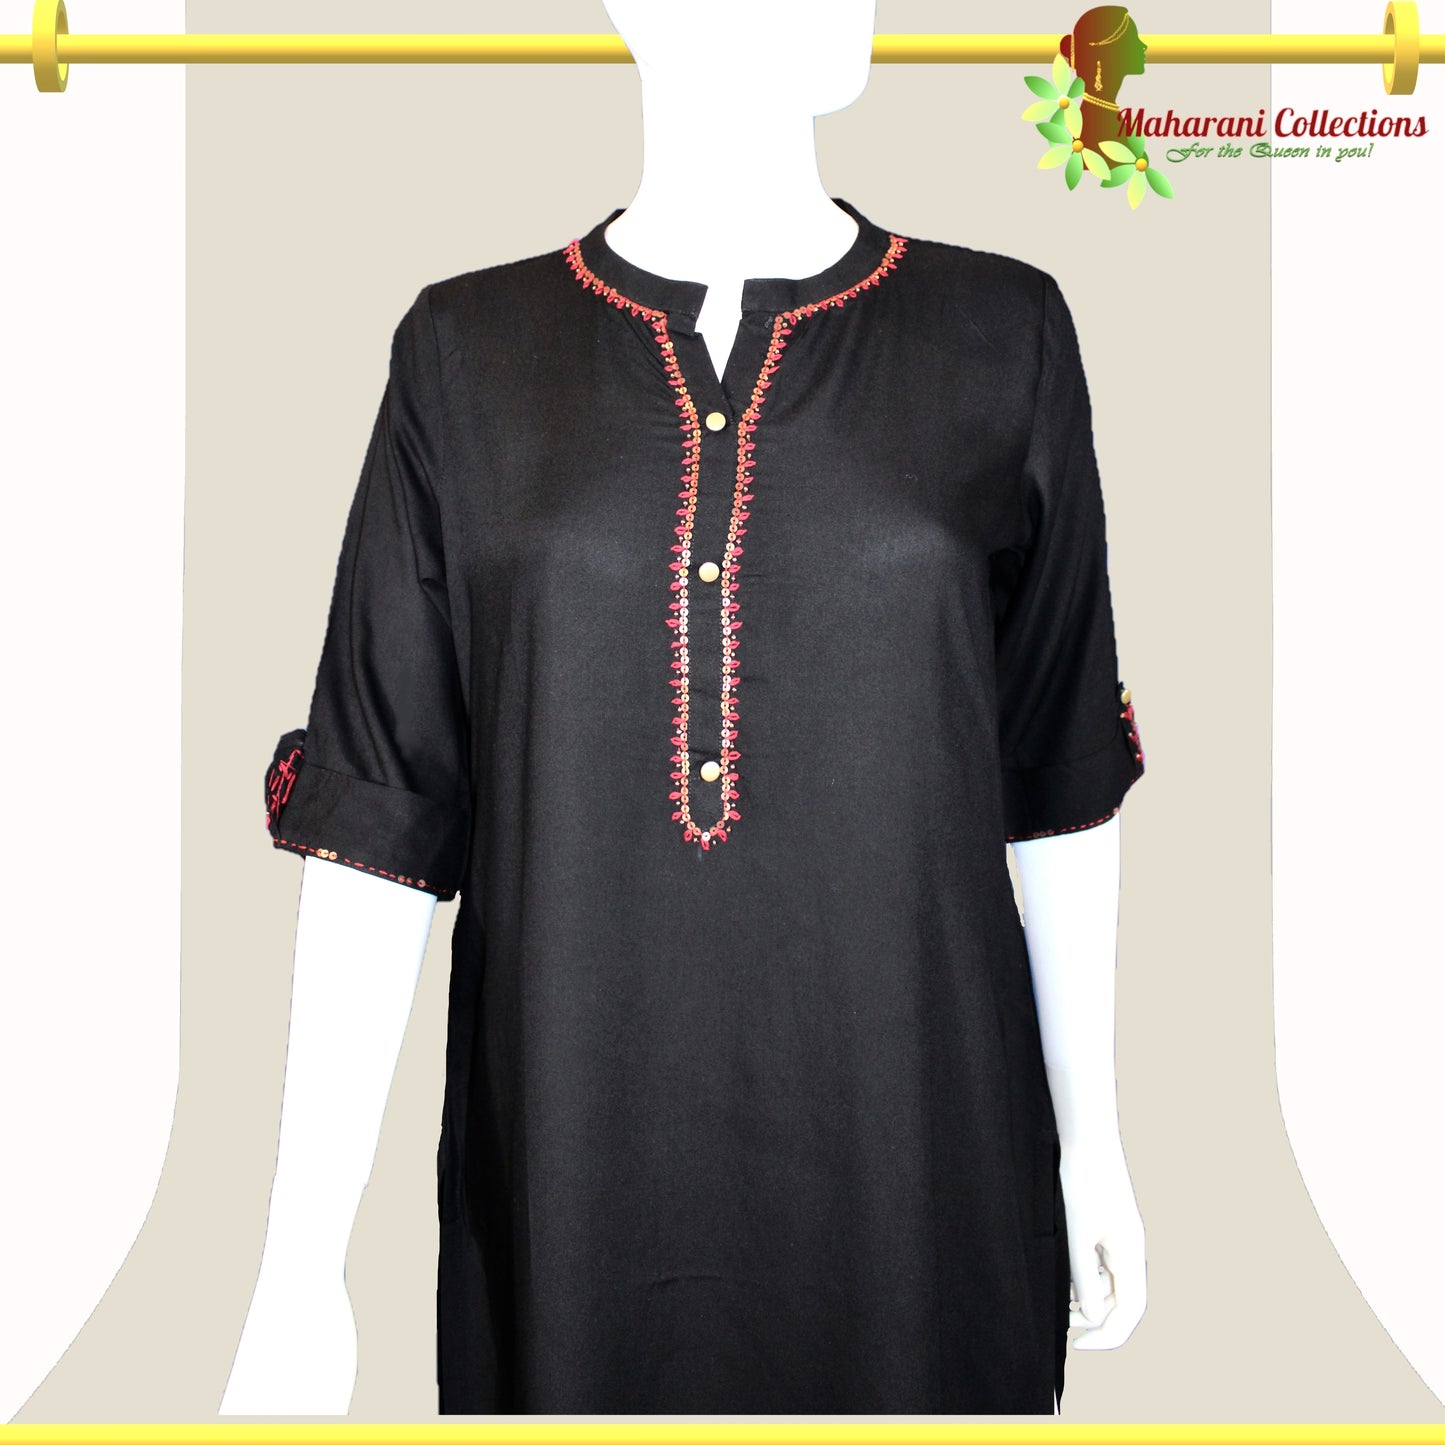 Maharani's Long Kurta Top - Soft Cotton - Black (S)